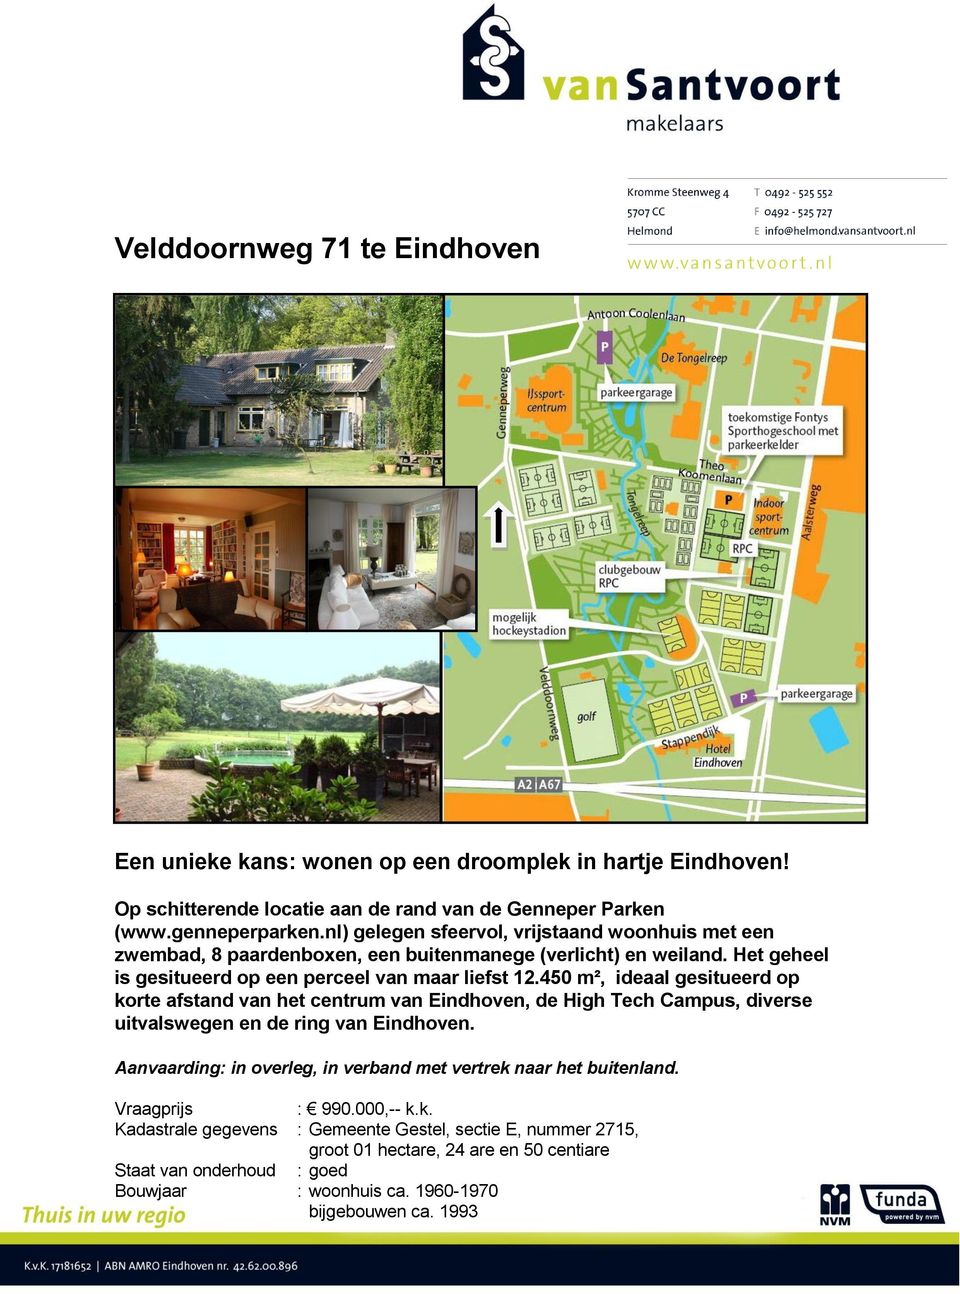 450 m², ideaal gesitueerd op korte afstand van het centrum van Eindhoven, de High Tech Campus, diverse uitvalswegen en de ring van Eindhoven.